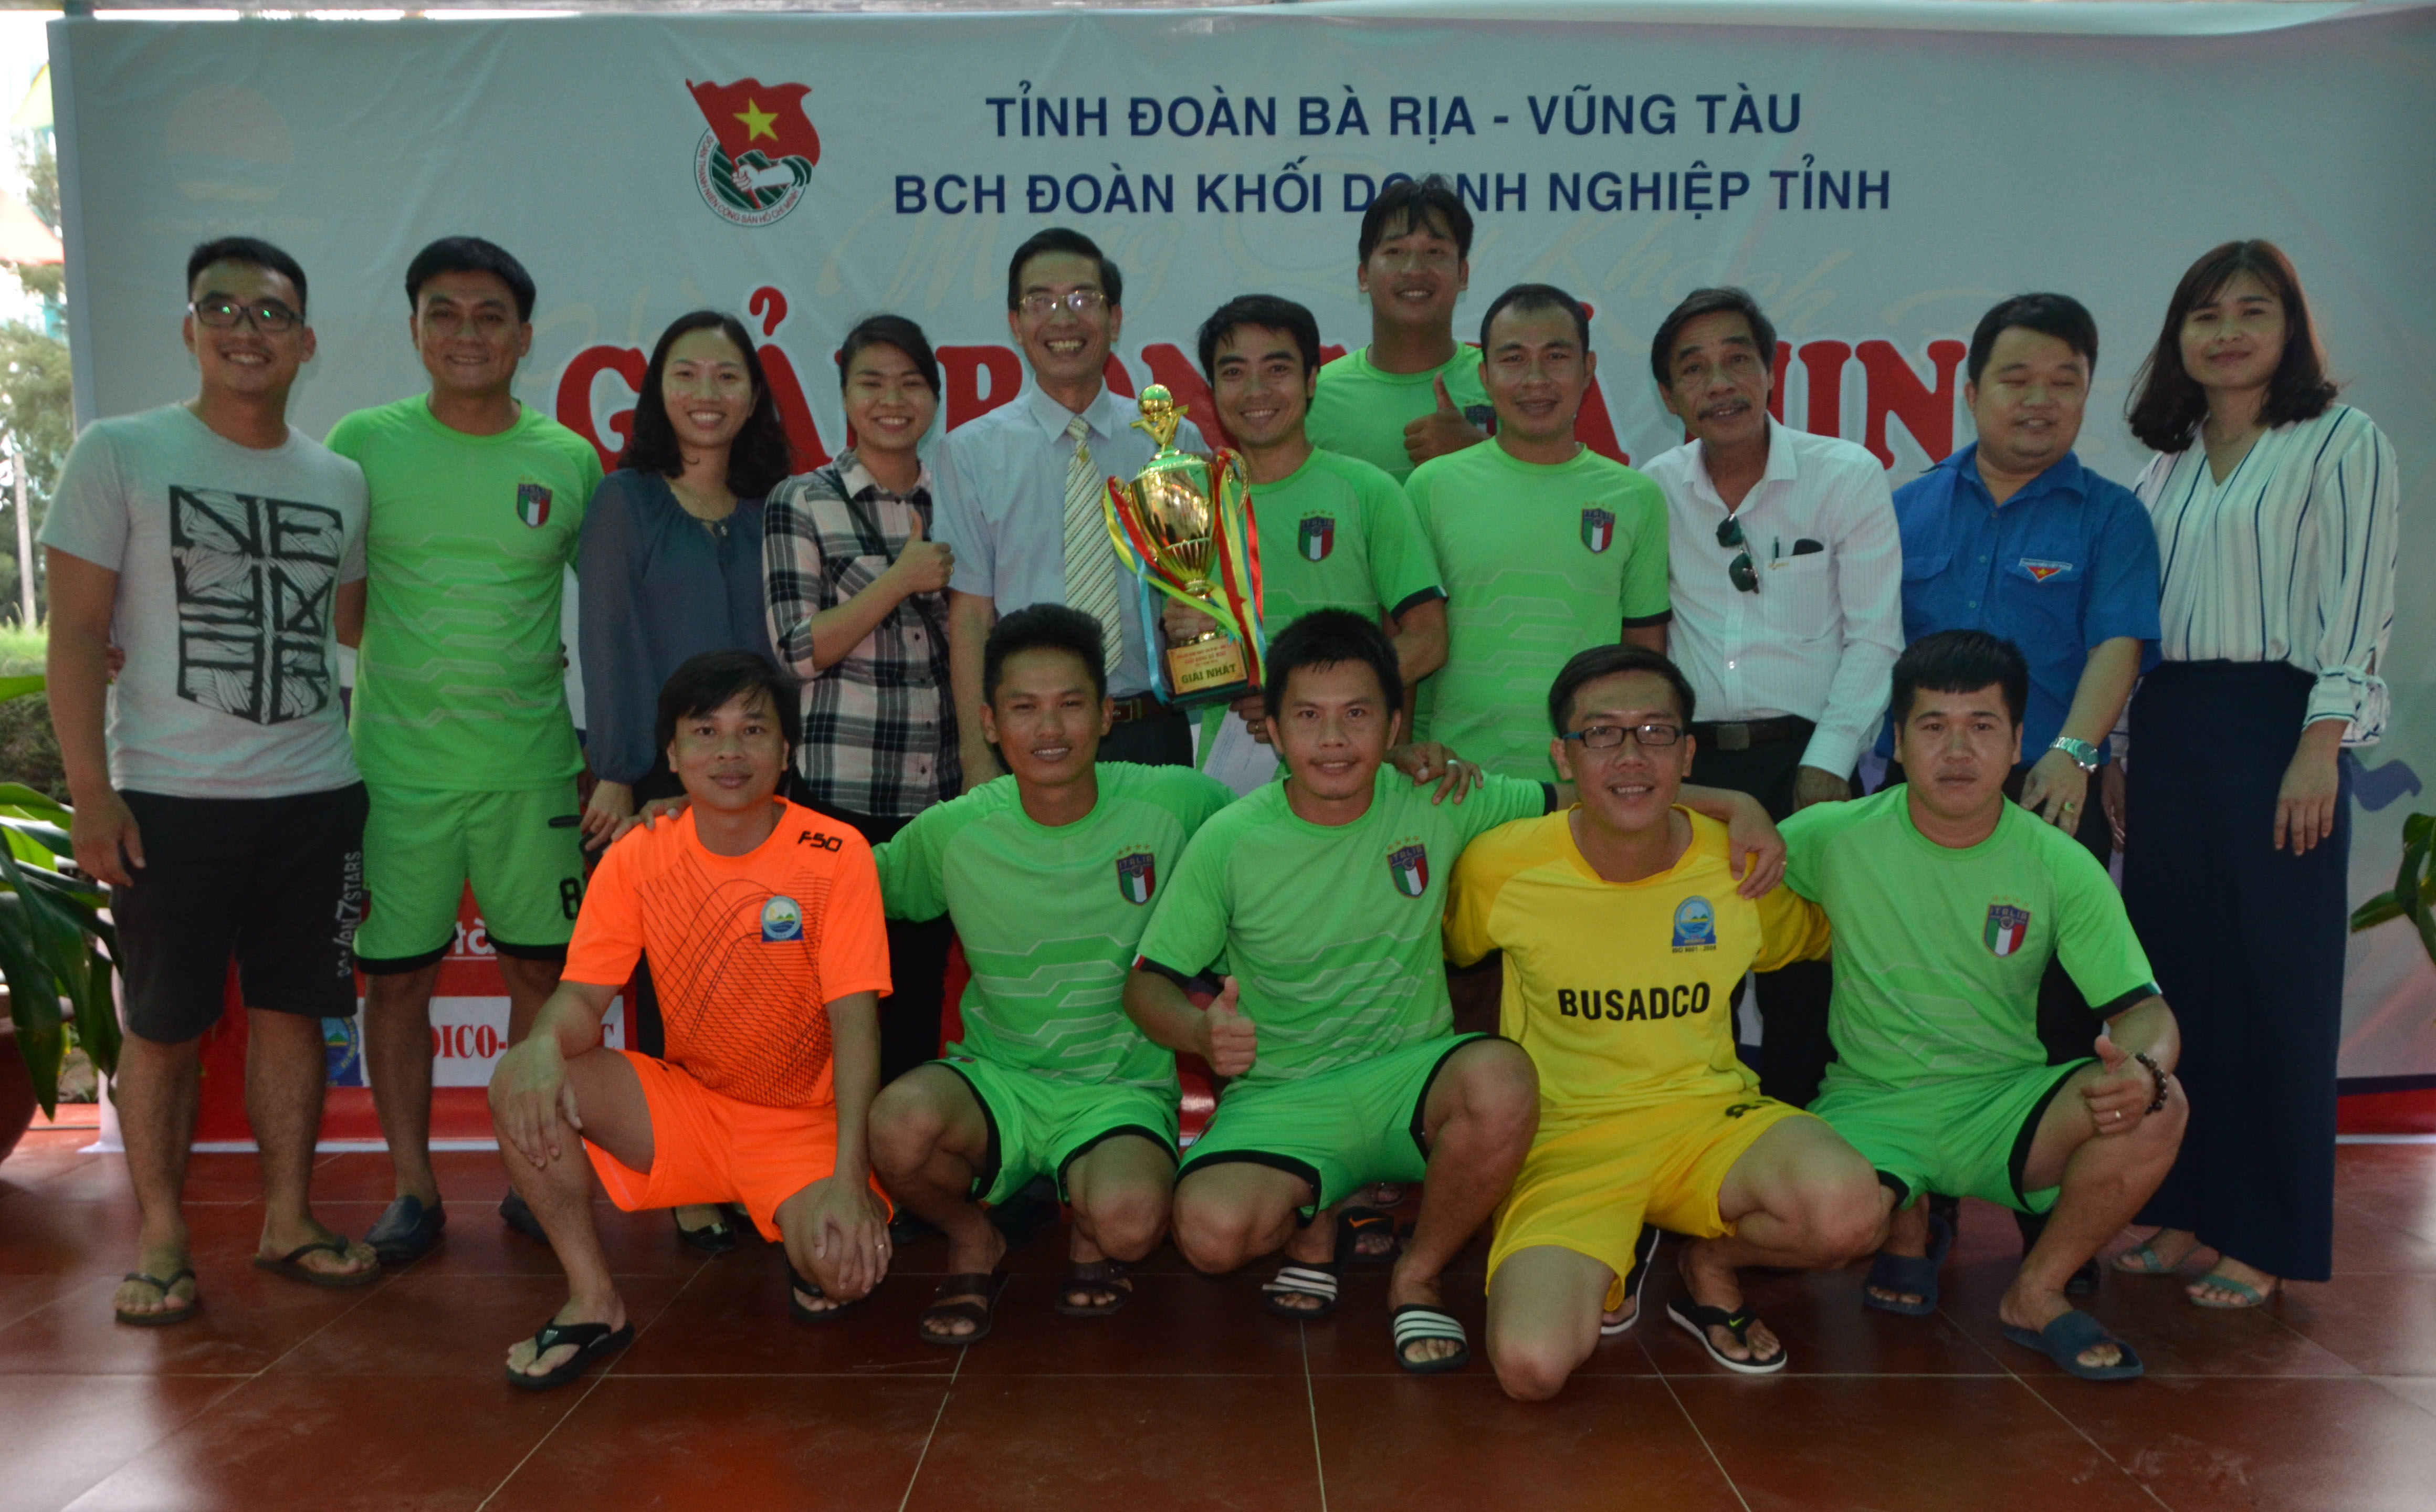 Ban tổ chức trao cúp vô địch cho Đoàn cơ sở Busadco.